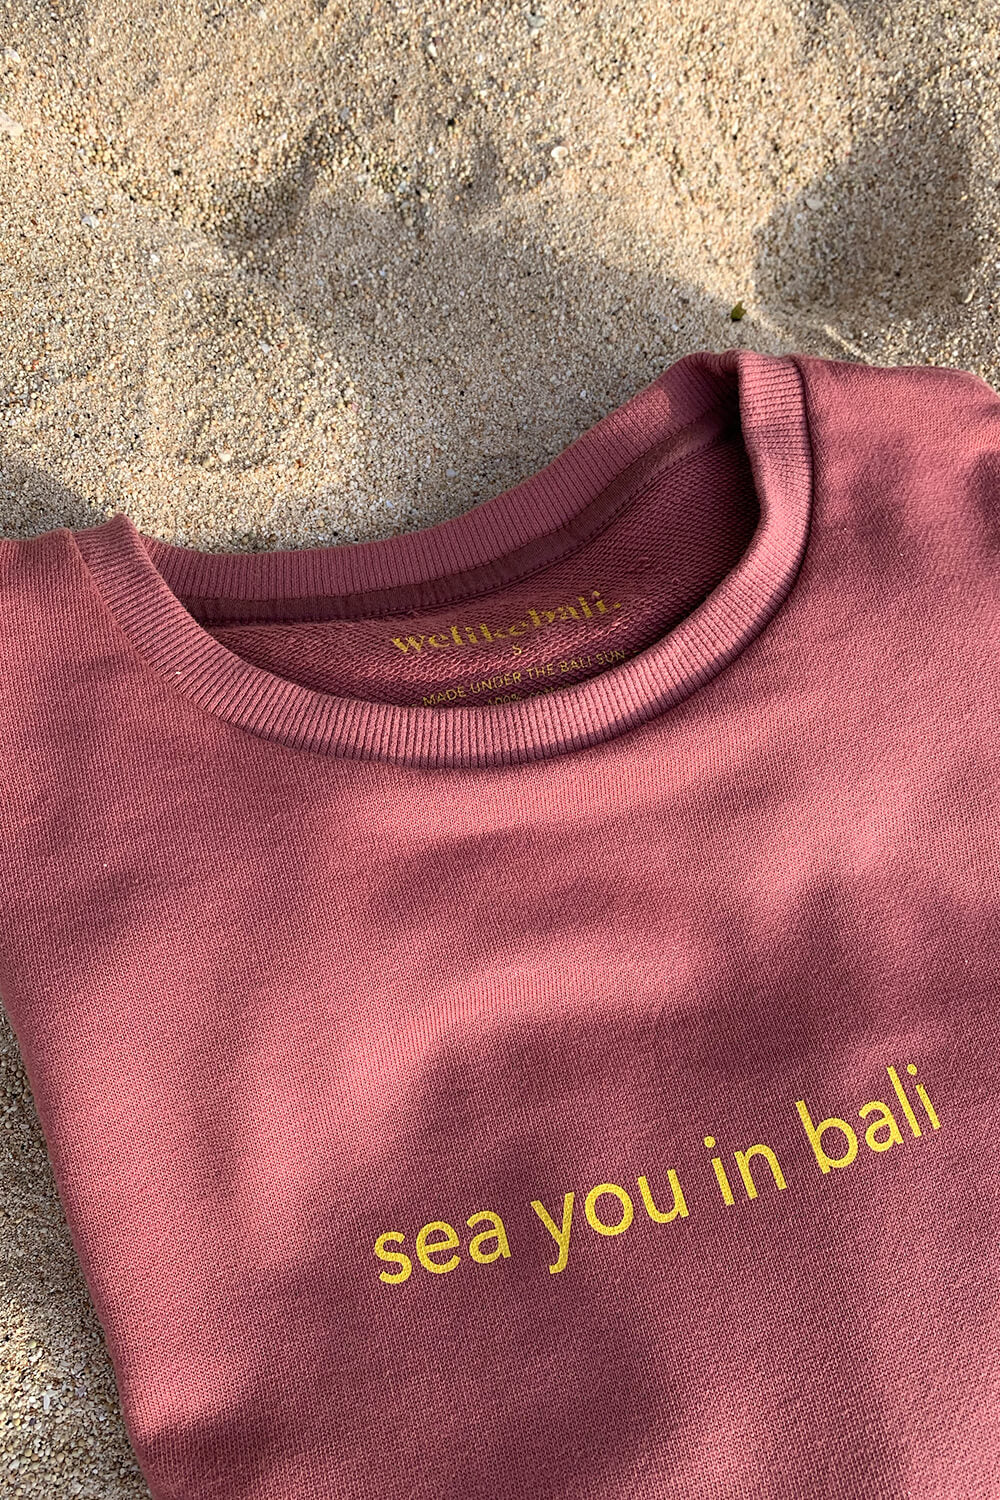 Sea you in Bali Sweater - Welikebali